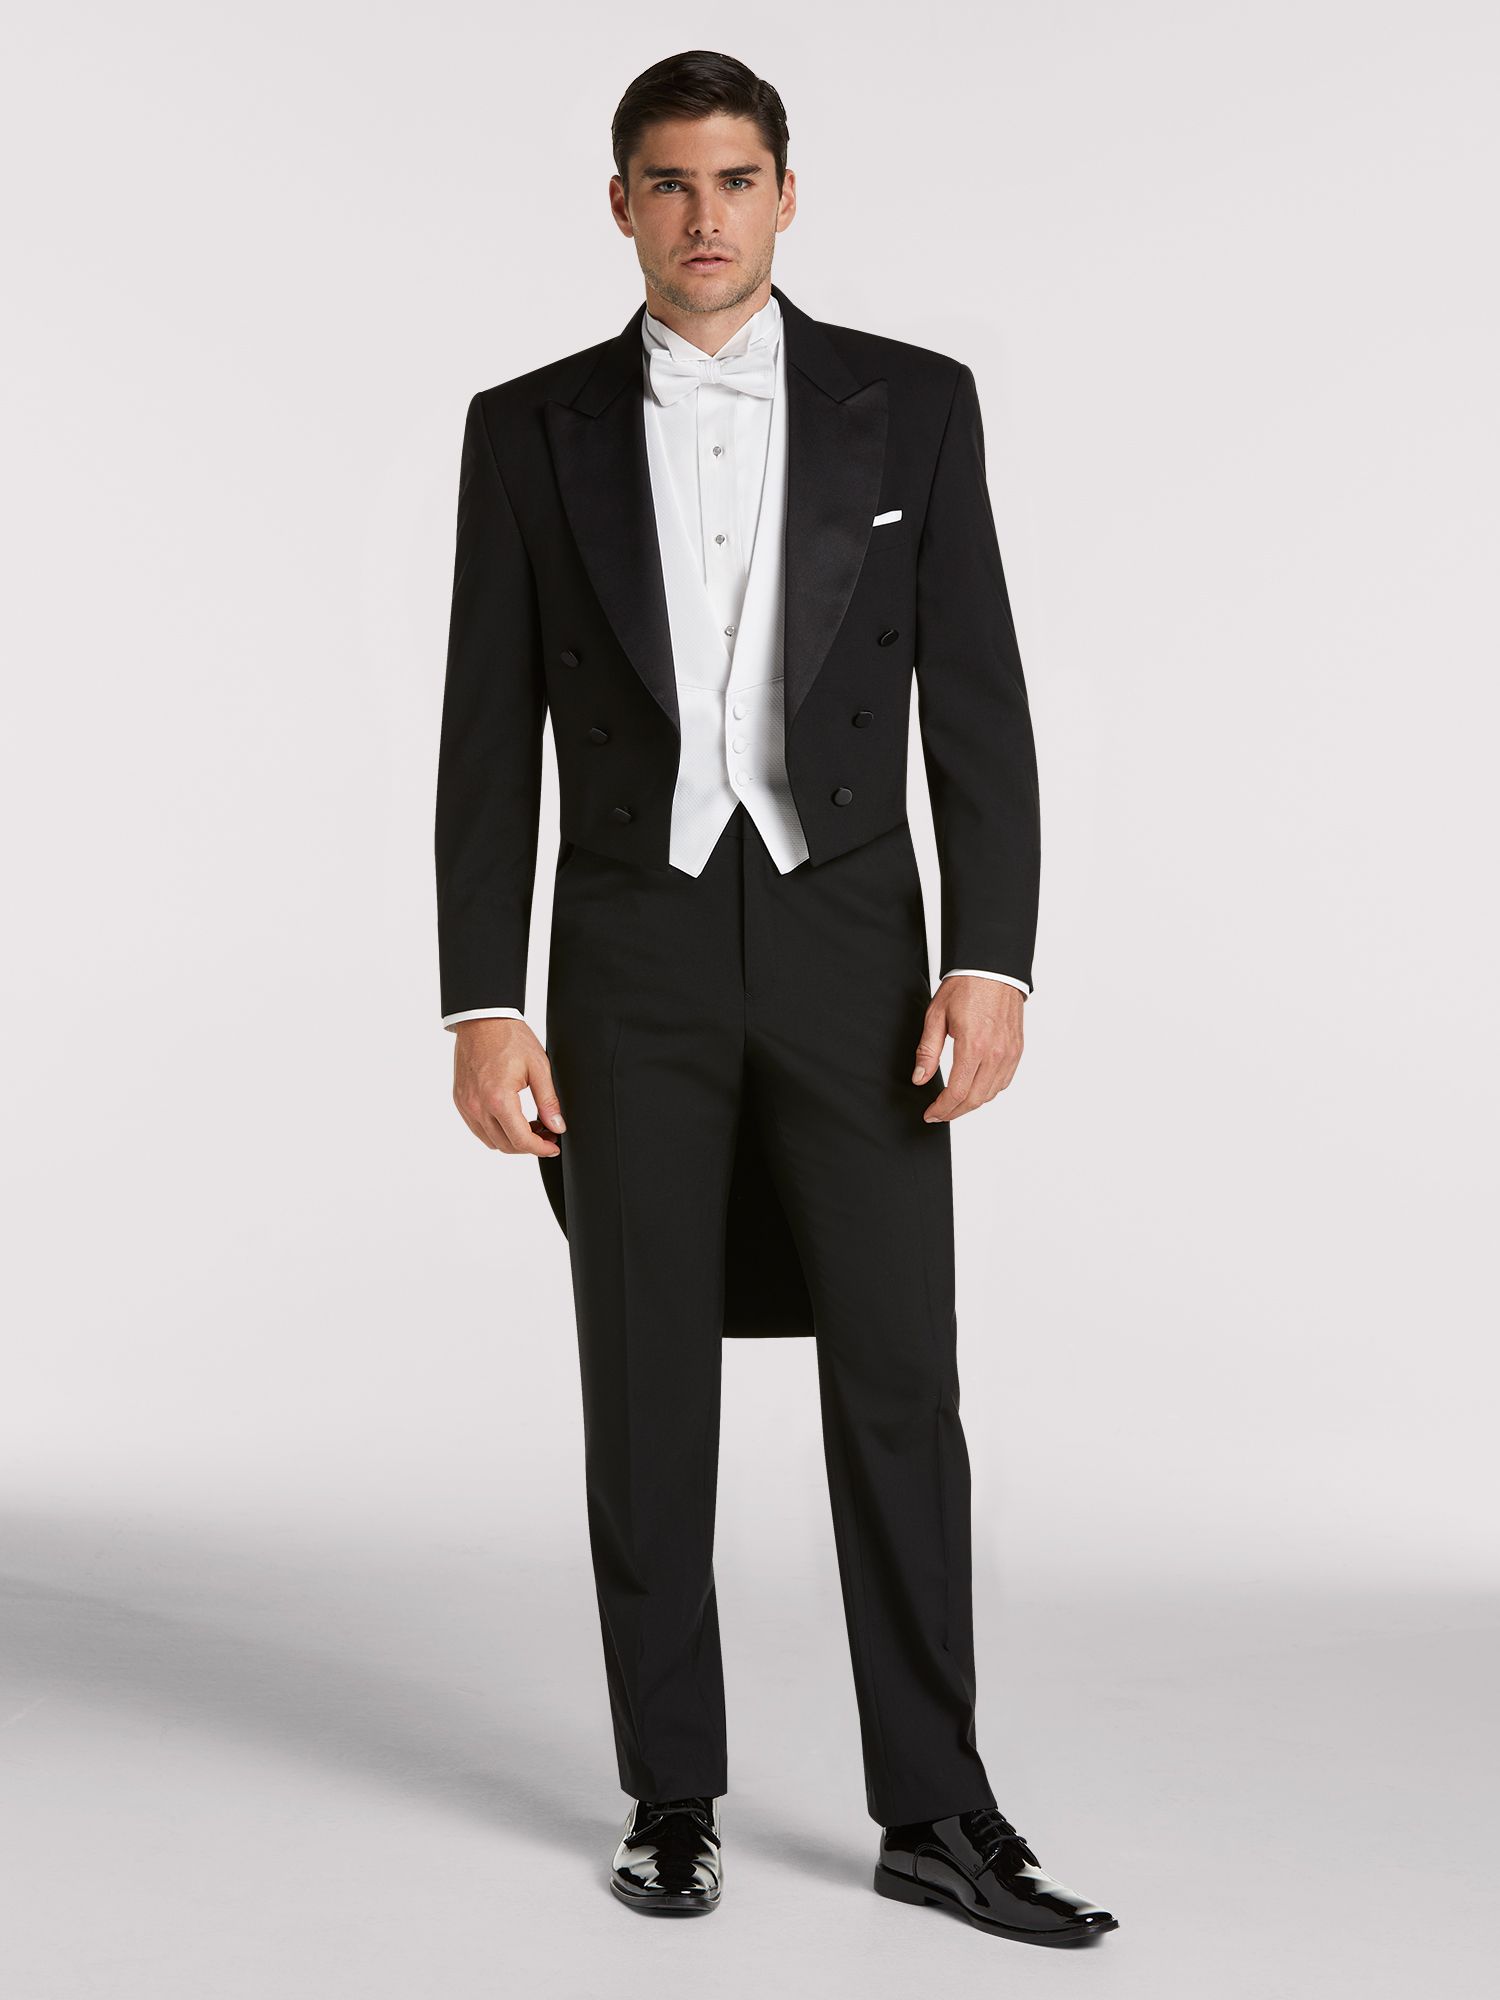 formal tuxedo dress